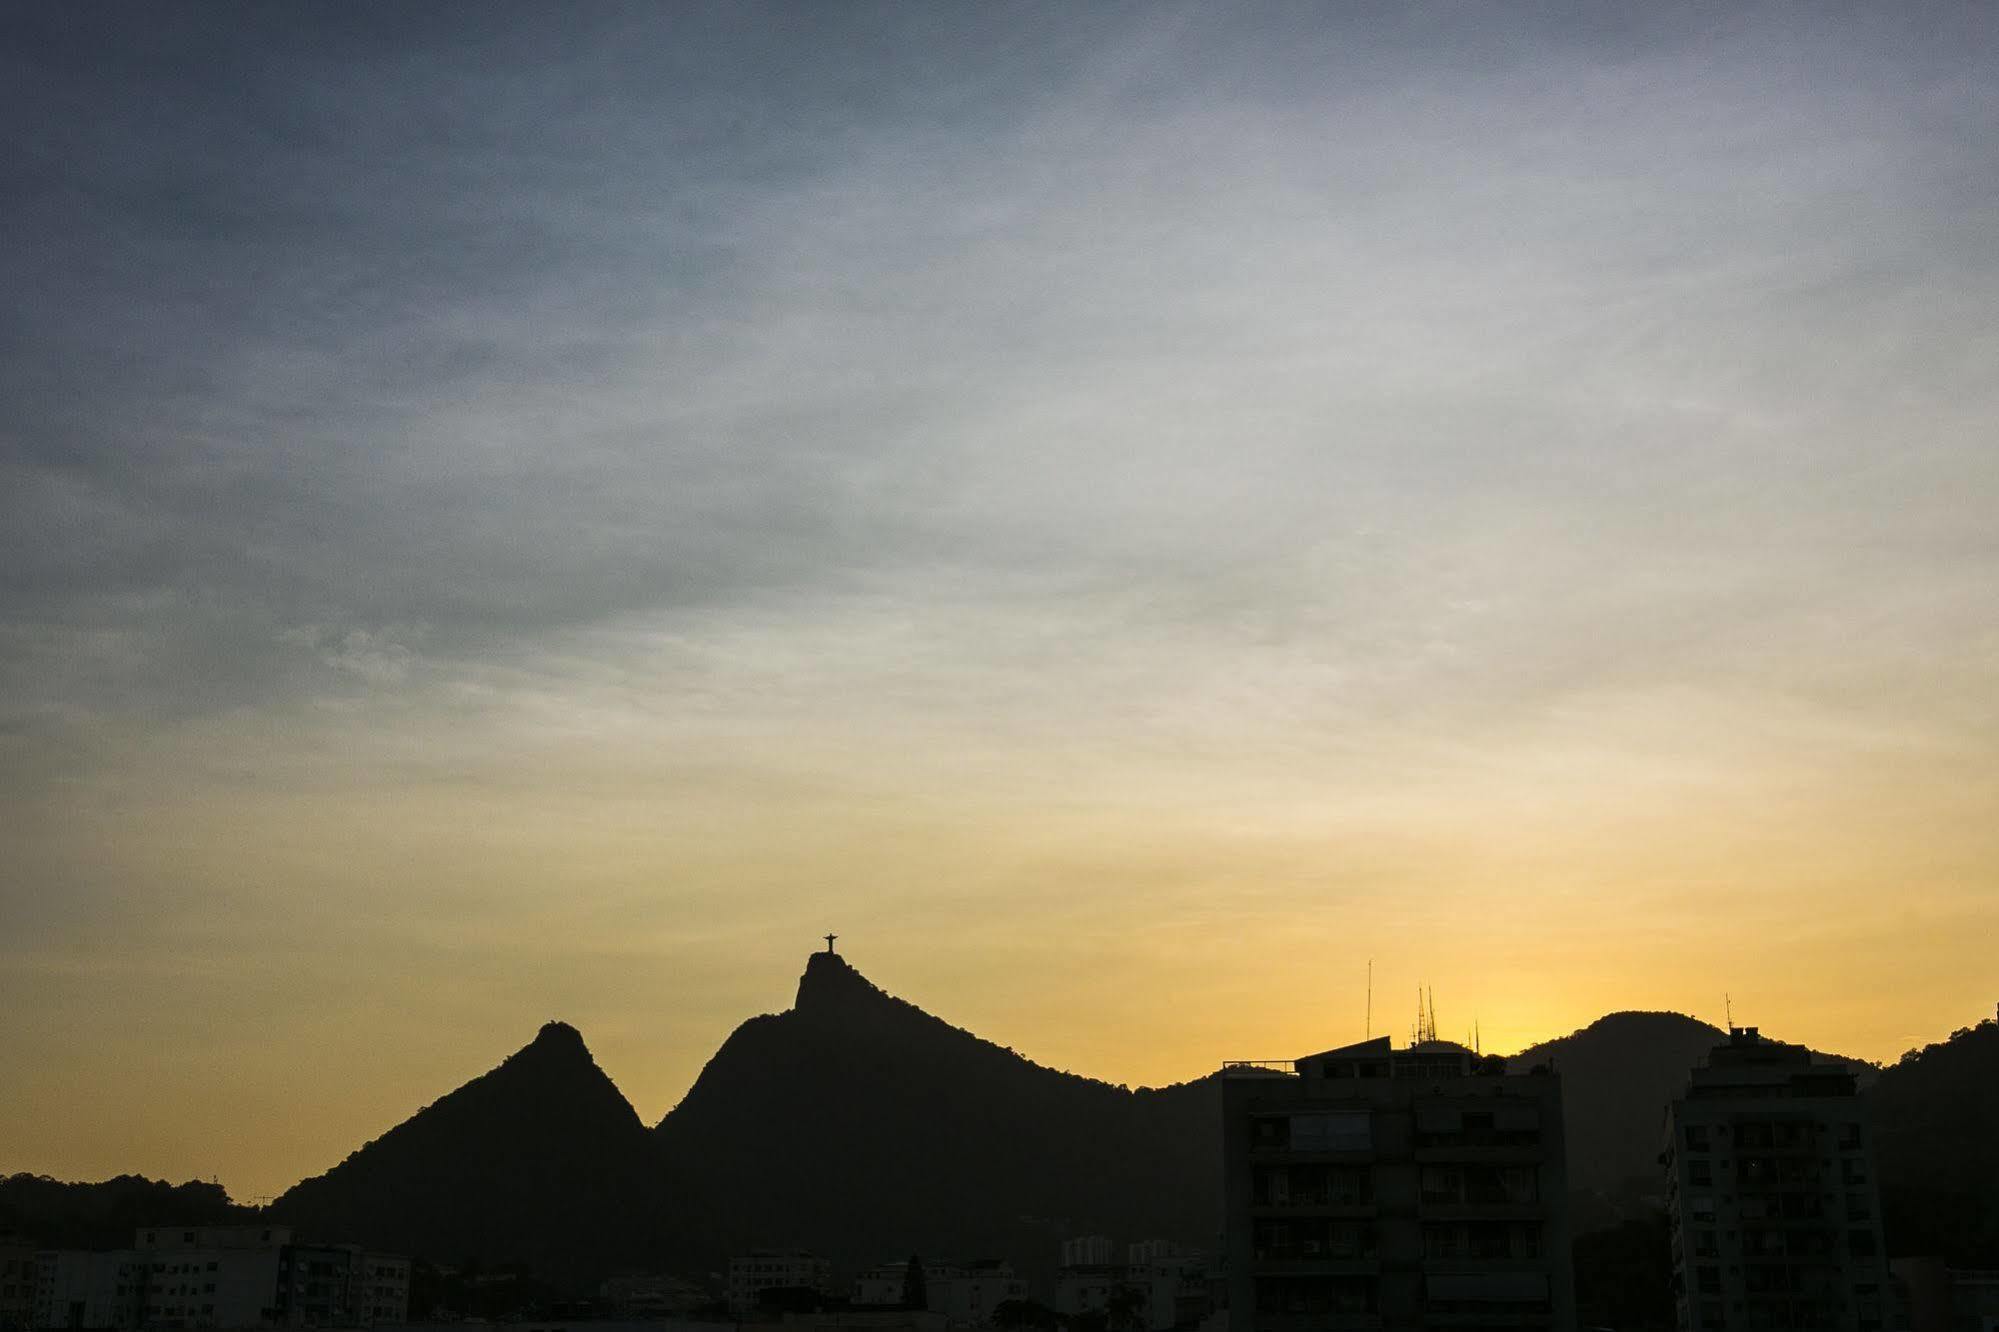 Scorial Rio Hotel Rio de Janeiro Bagian luar foto